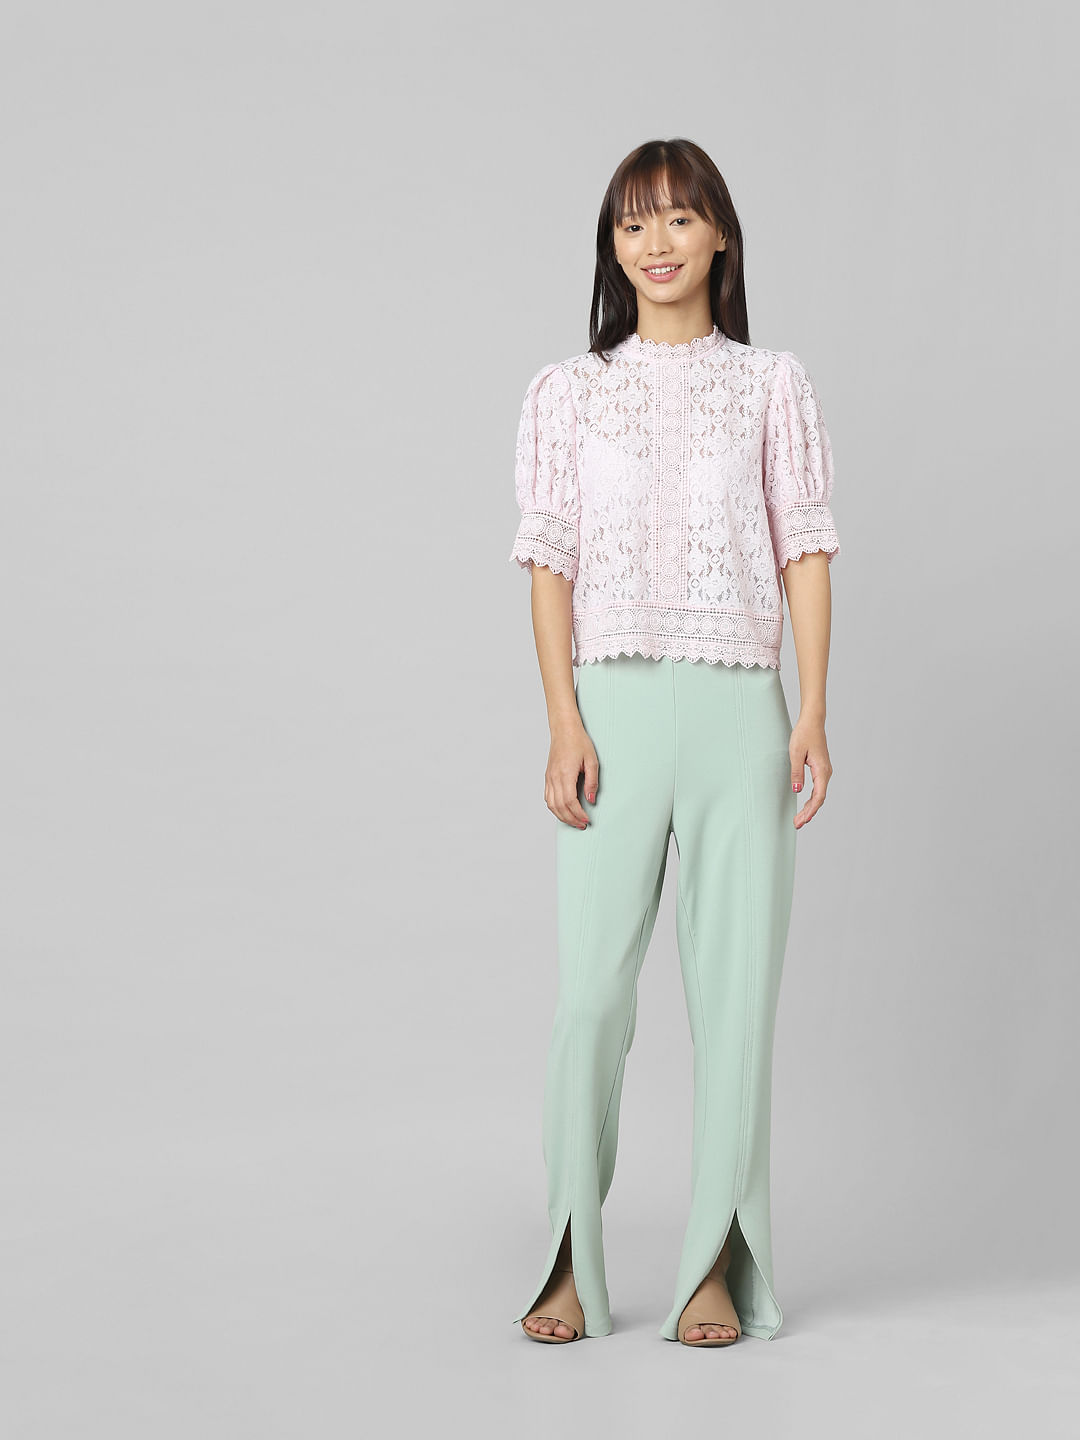 Shop Wide Leg Lace Pants Online | Max Qatar